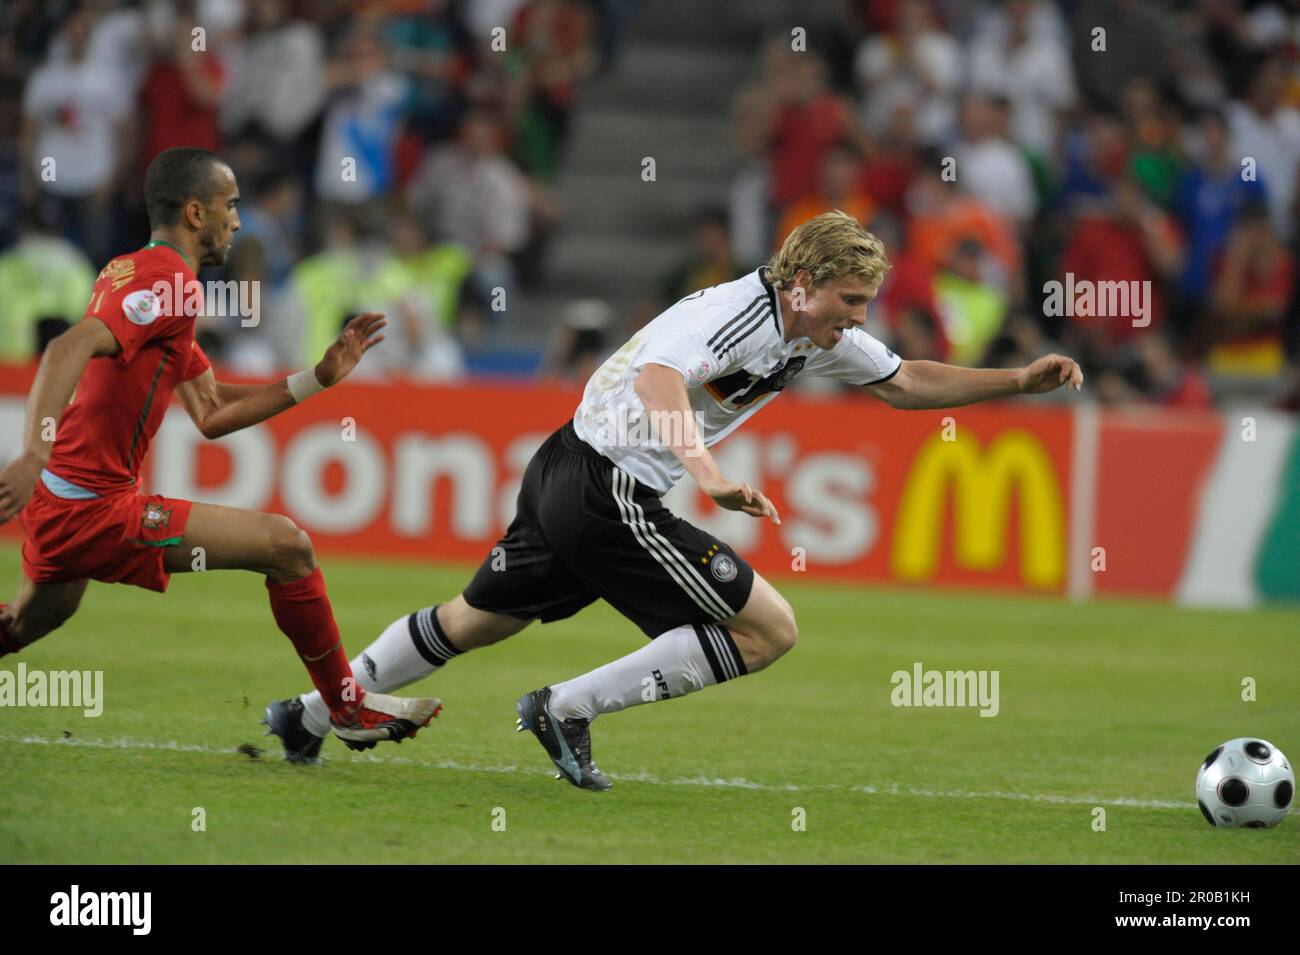 Marcell Jansen Aktion.Fußball Europameisterschaft Länderspiel Deutschland - Portugal 3:2, 19.6.2008 Stock Photo